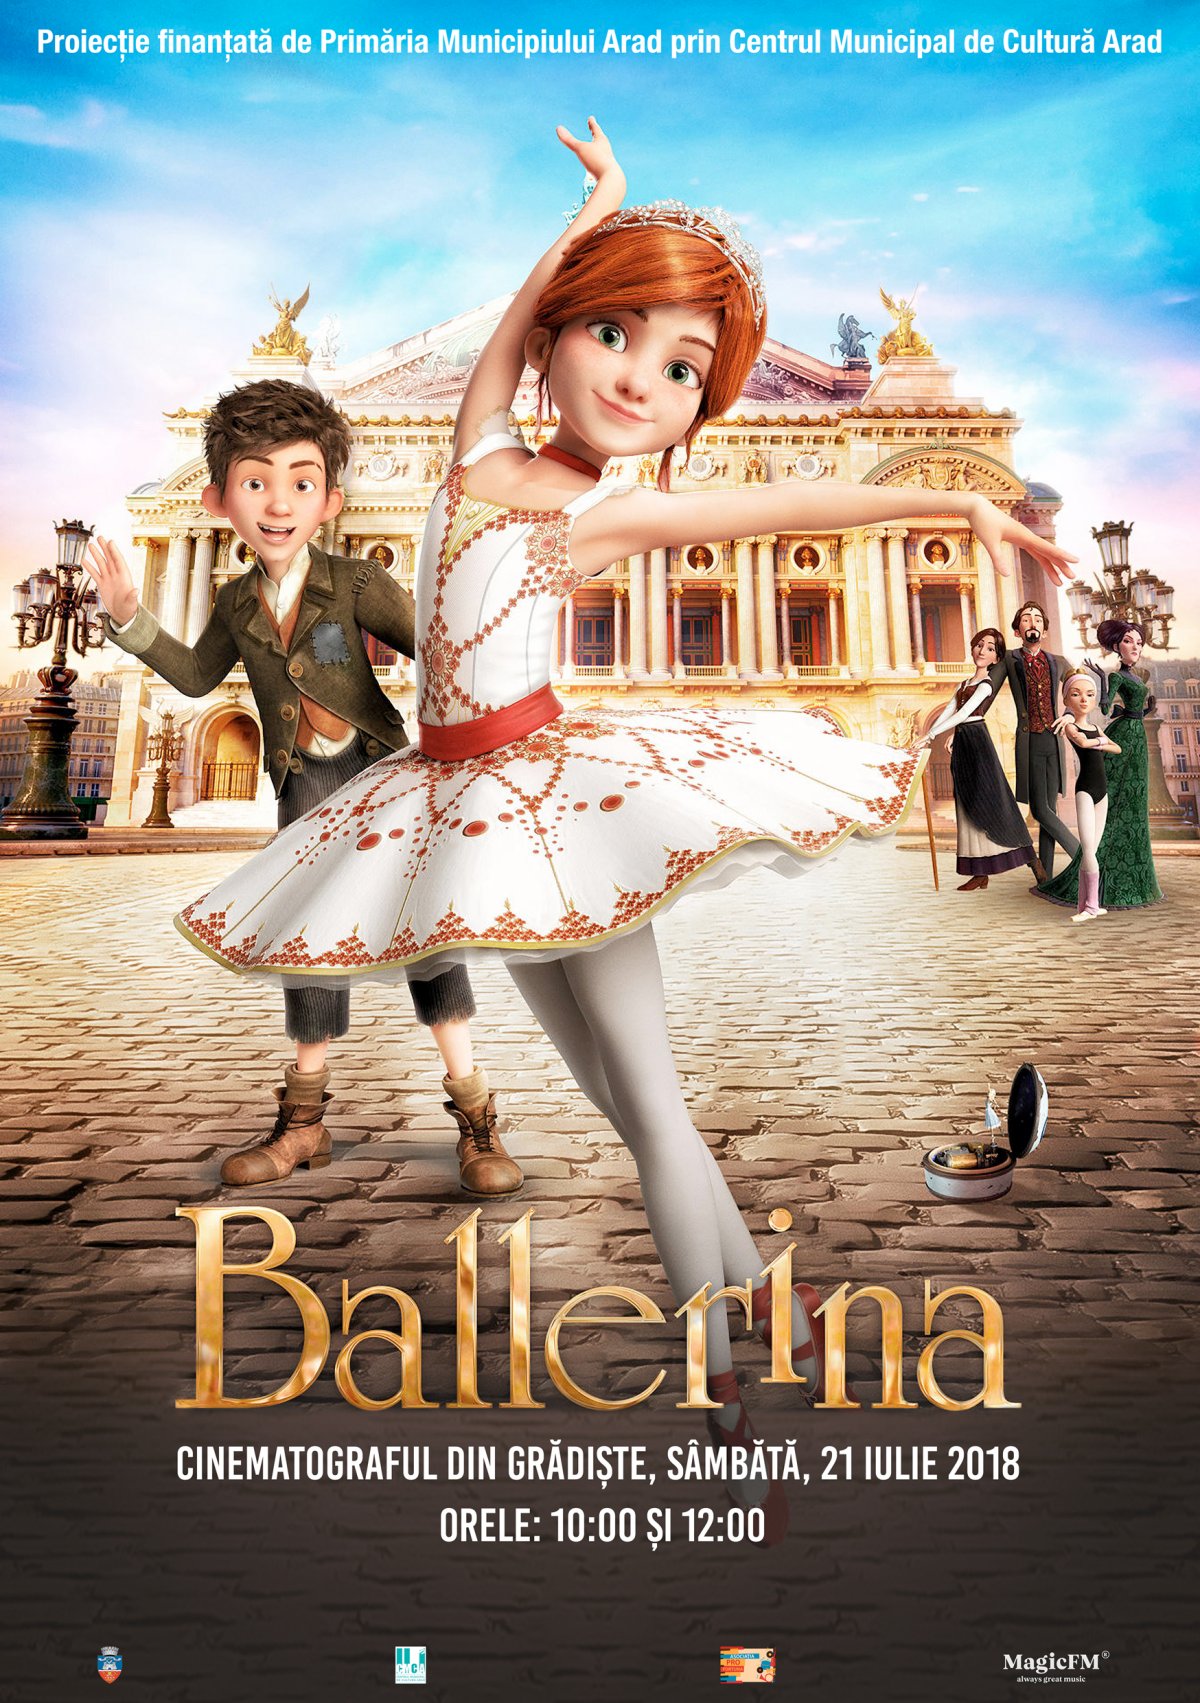 Balerina – filmul lunii iulie la Cinematograful din Grădiște